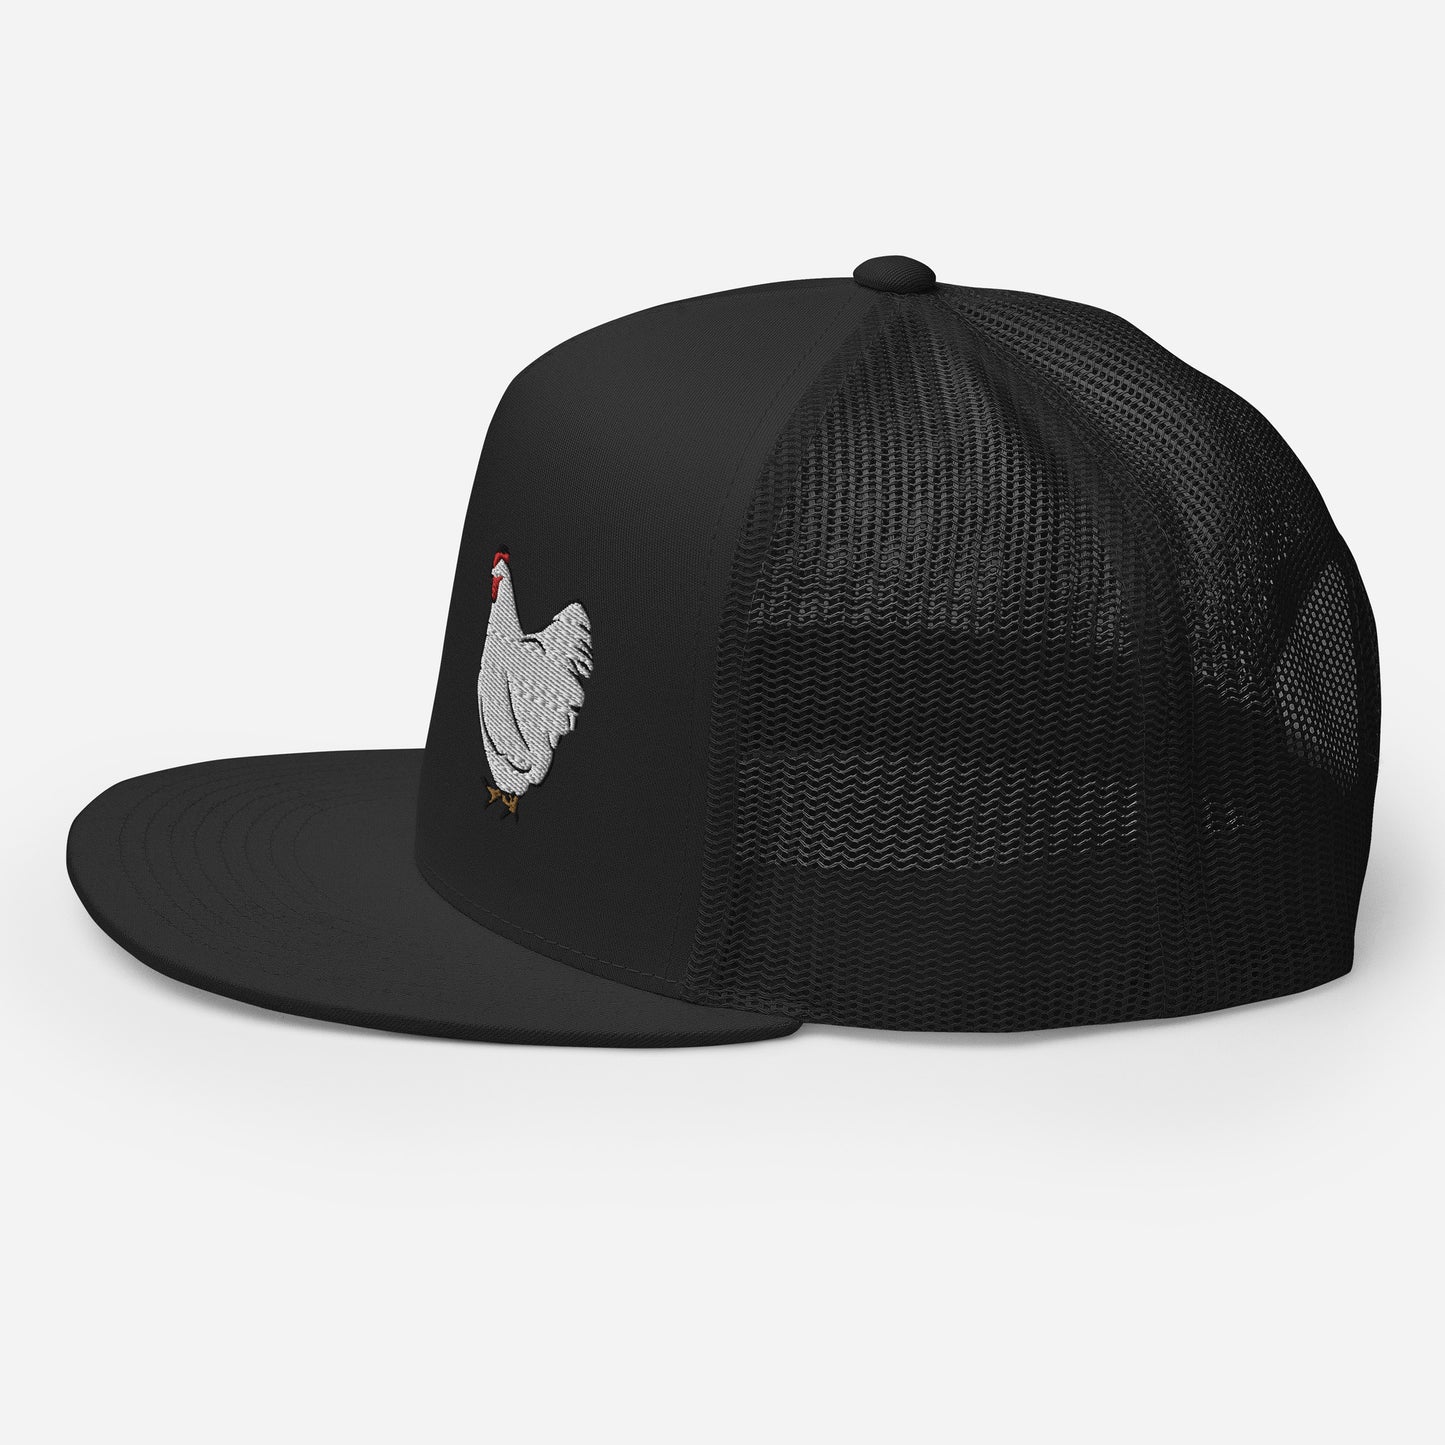 White chicken Trucker Cap| hat